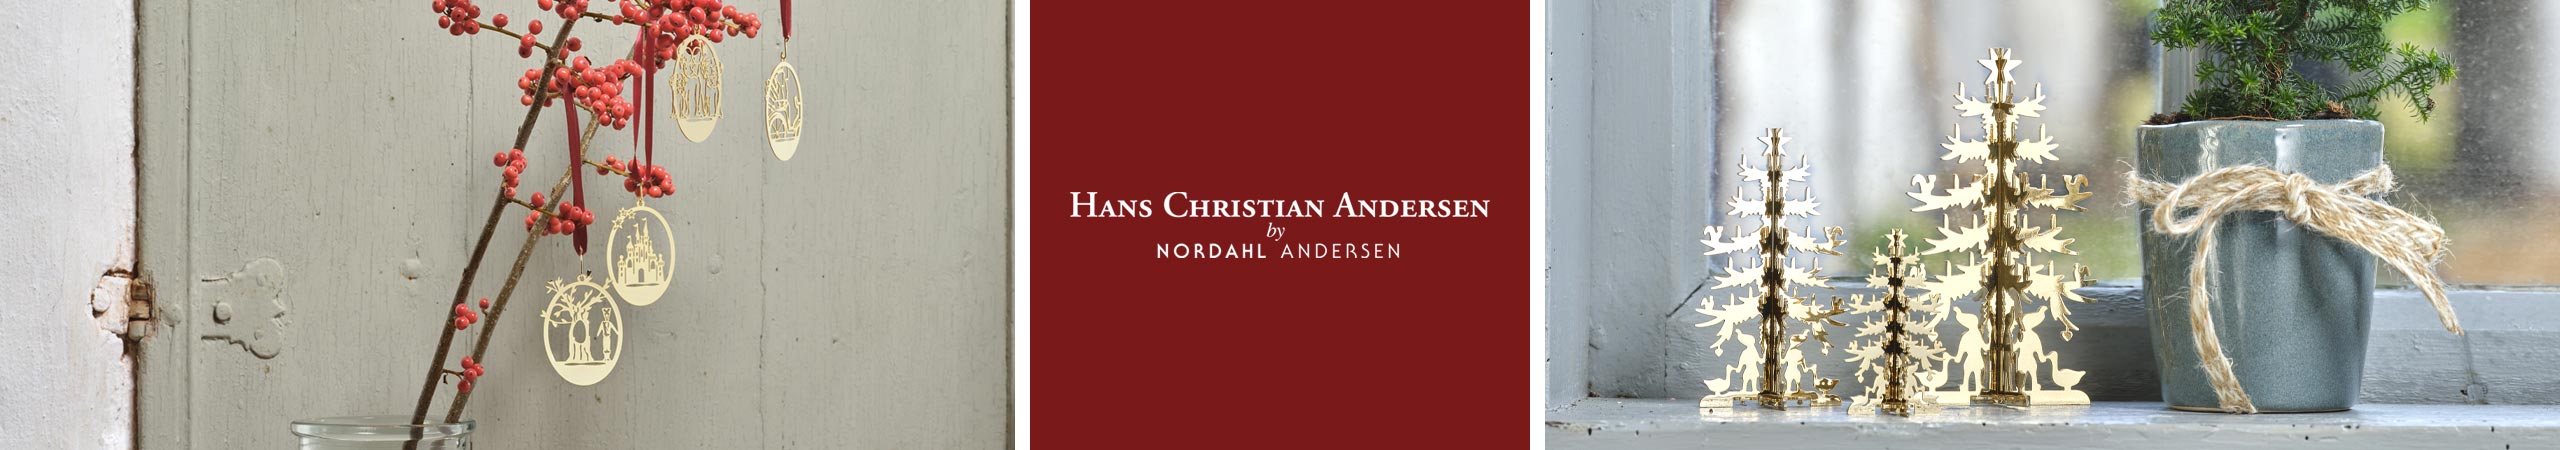 H.C. Andersen Home